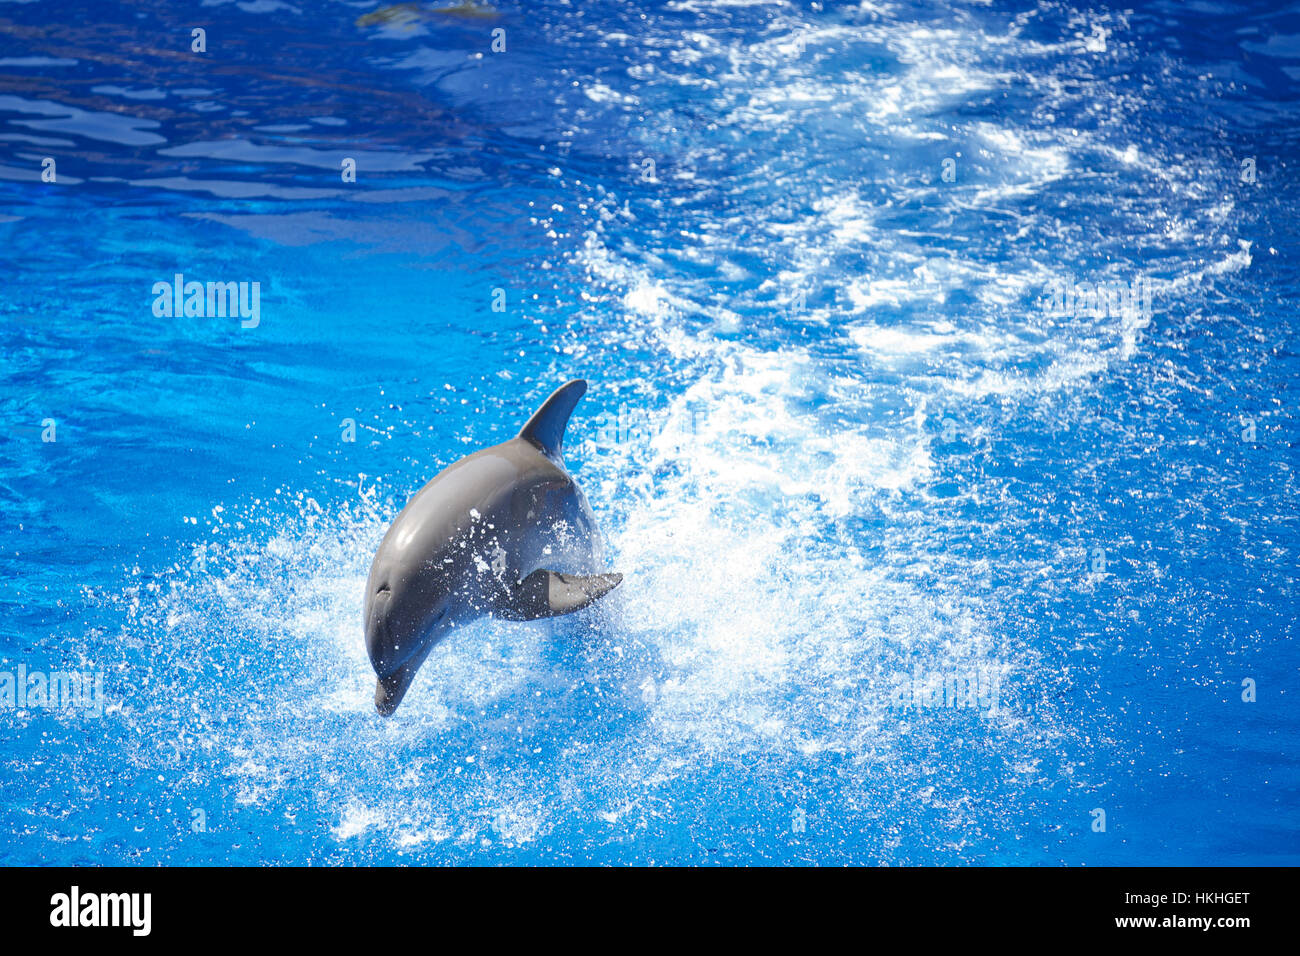 dolphin splashing at zoo. swimming pool, animal, flipper, fish. Stock Photo